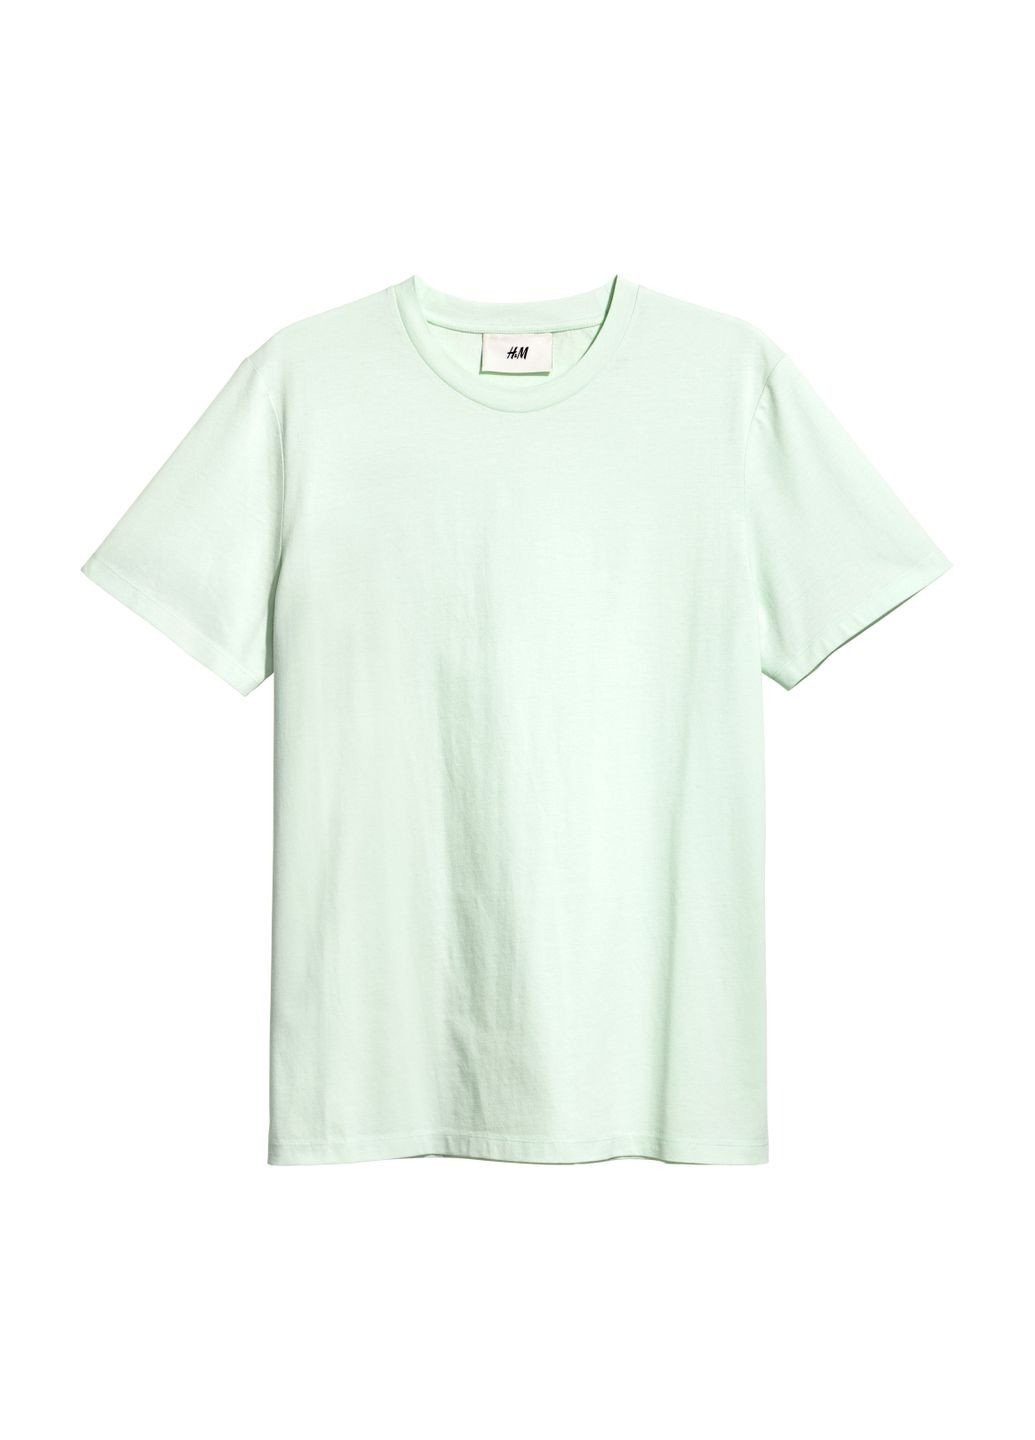 Салатовая футболка,салатовый, H&M